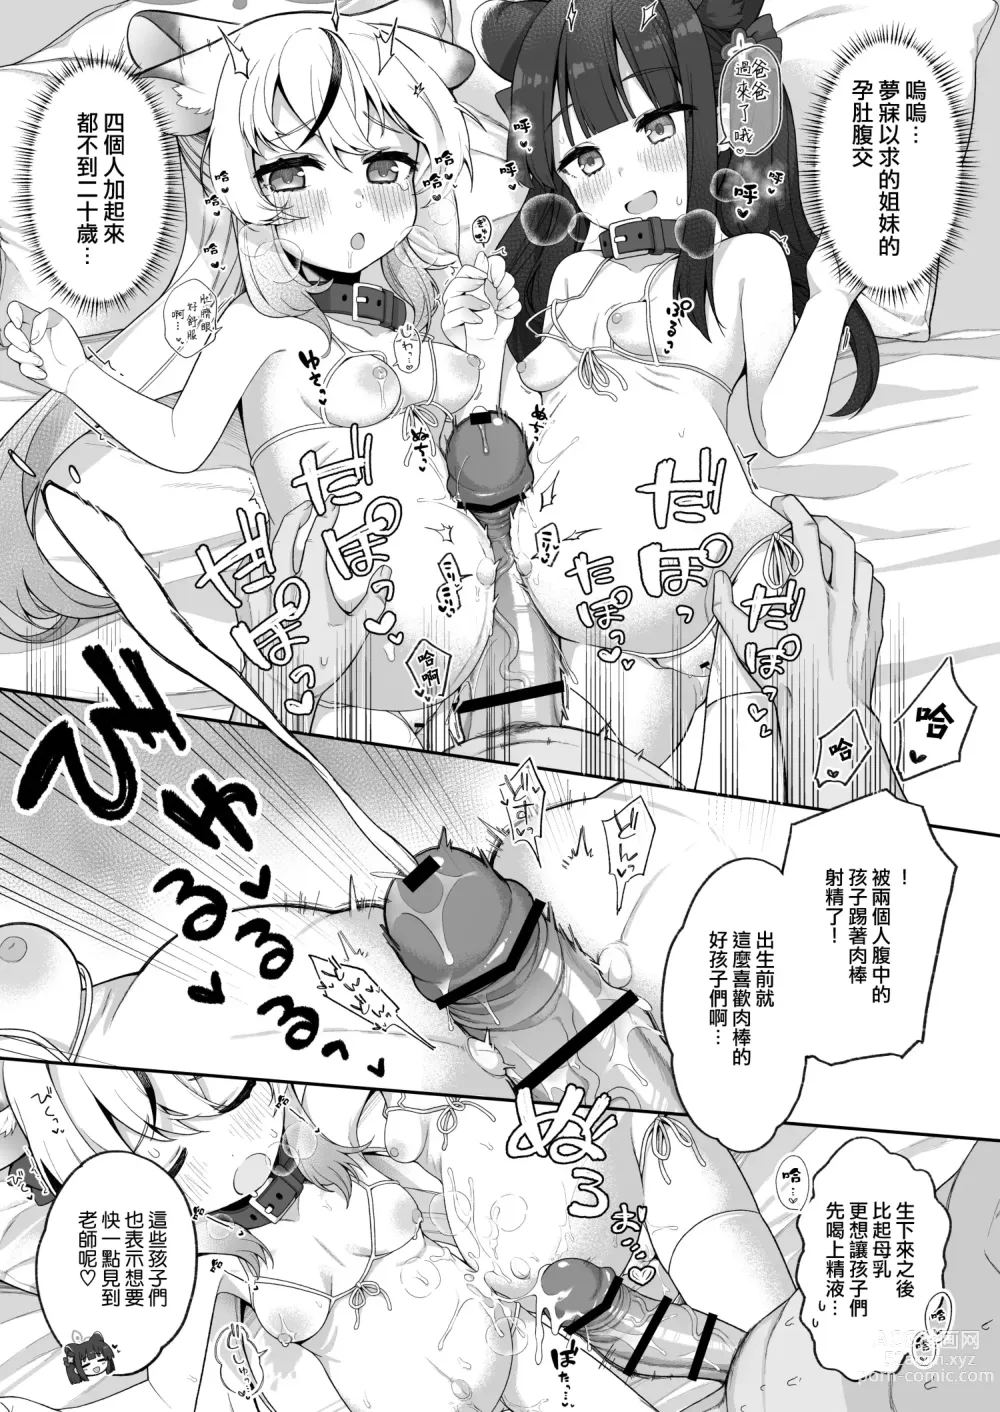 Page 101 of doujinshi Blue Aka-chan IN-bu